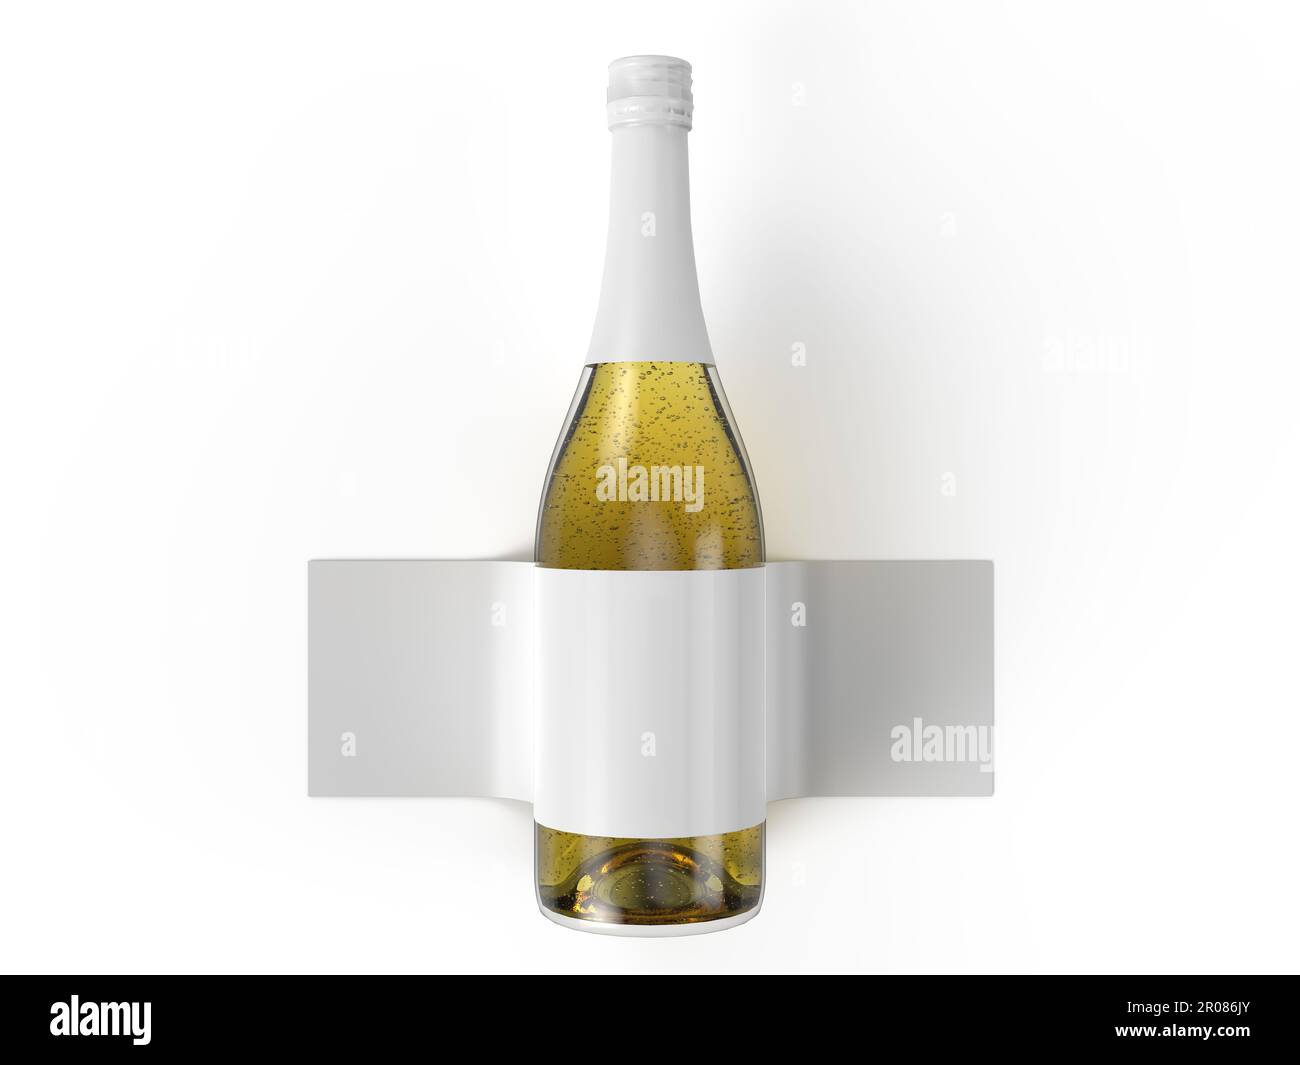 Maquette de bouteille de champagne minimaliste et moderne qui met en valeur votre conception avec clarté - isolée sur fond blanc - rendu 3D Banque D'Images